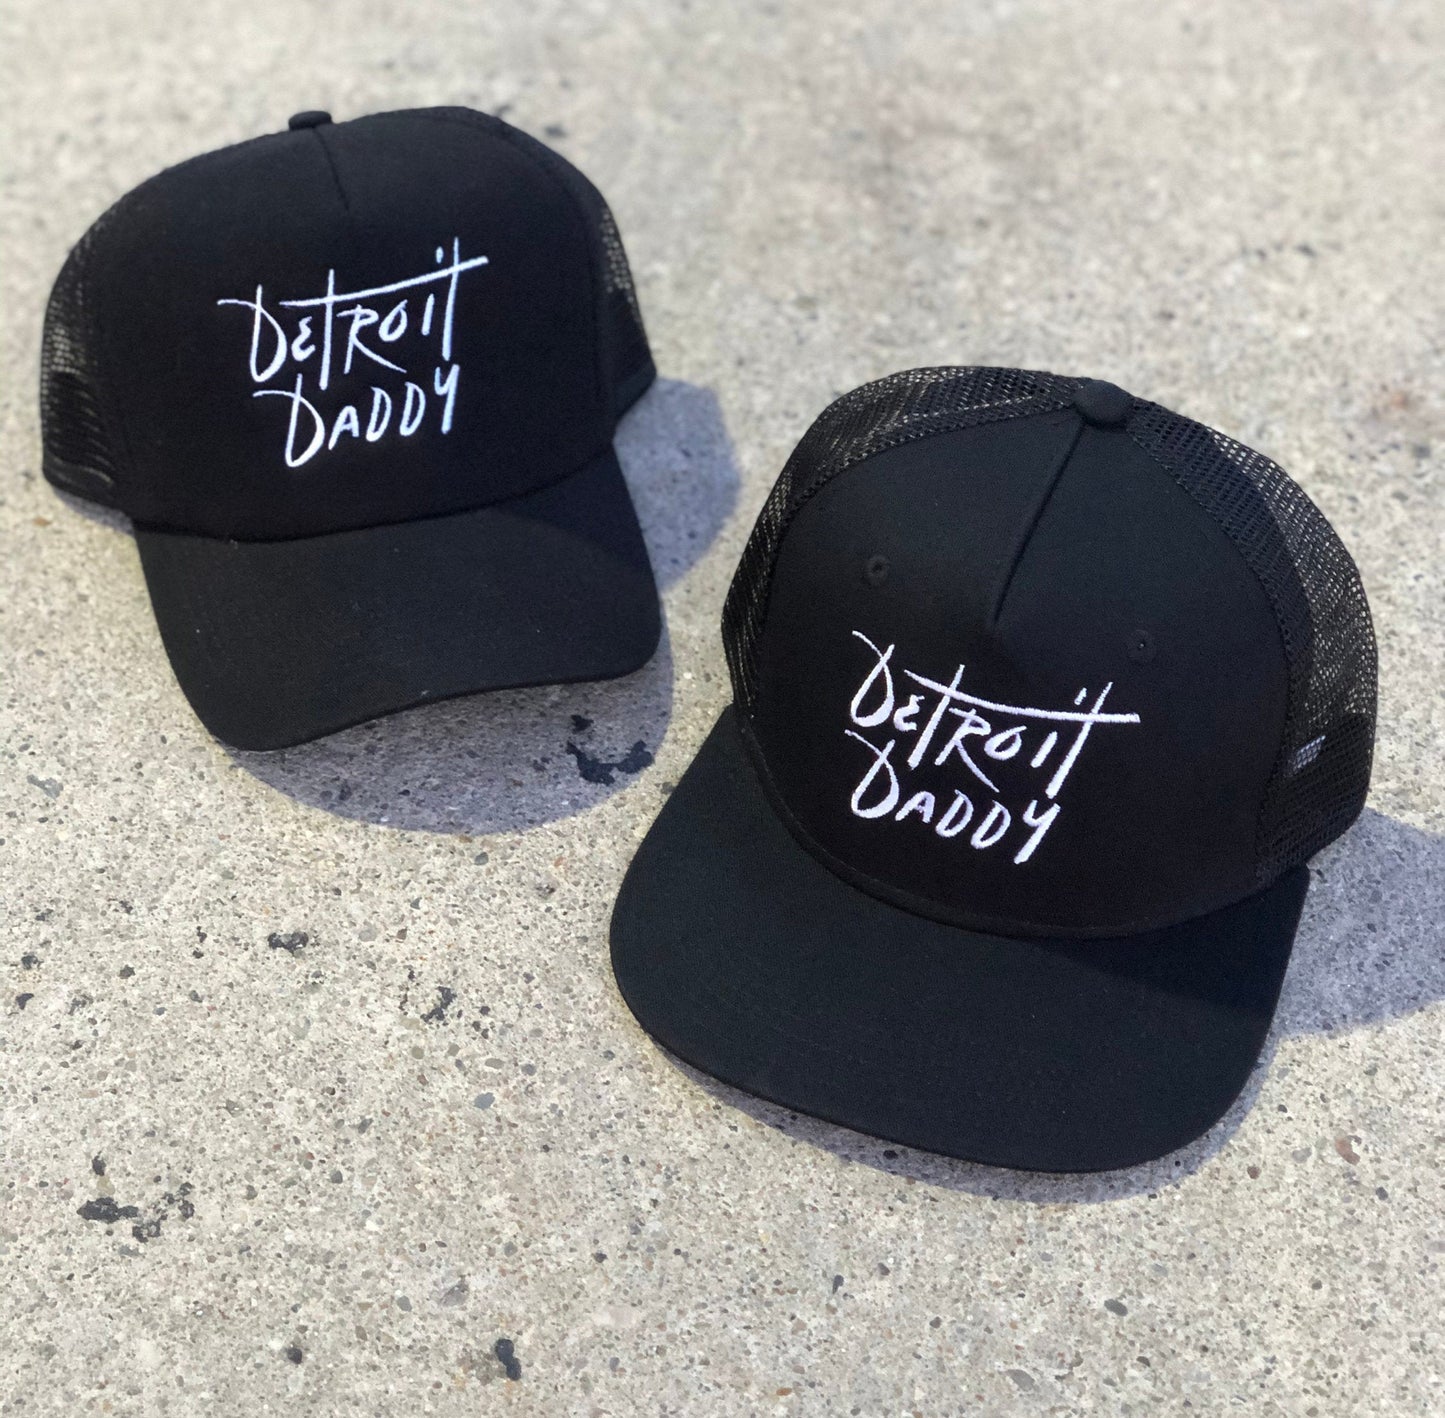 Detroit Daddy - Trucker Hat